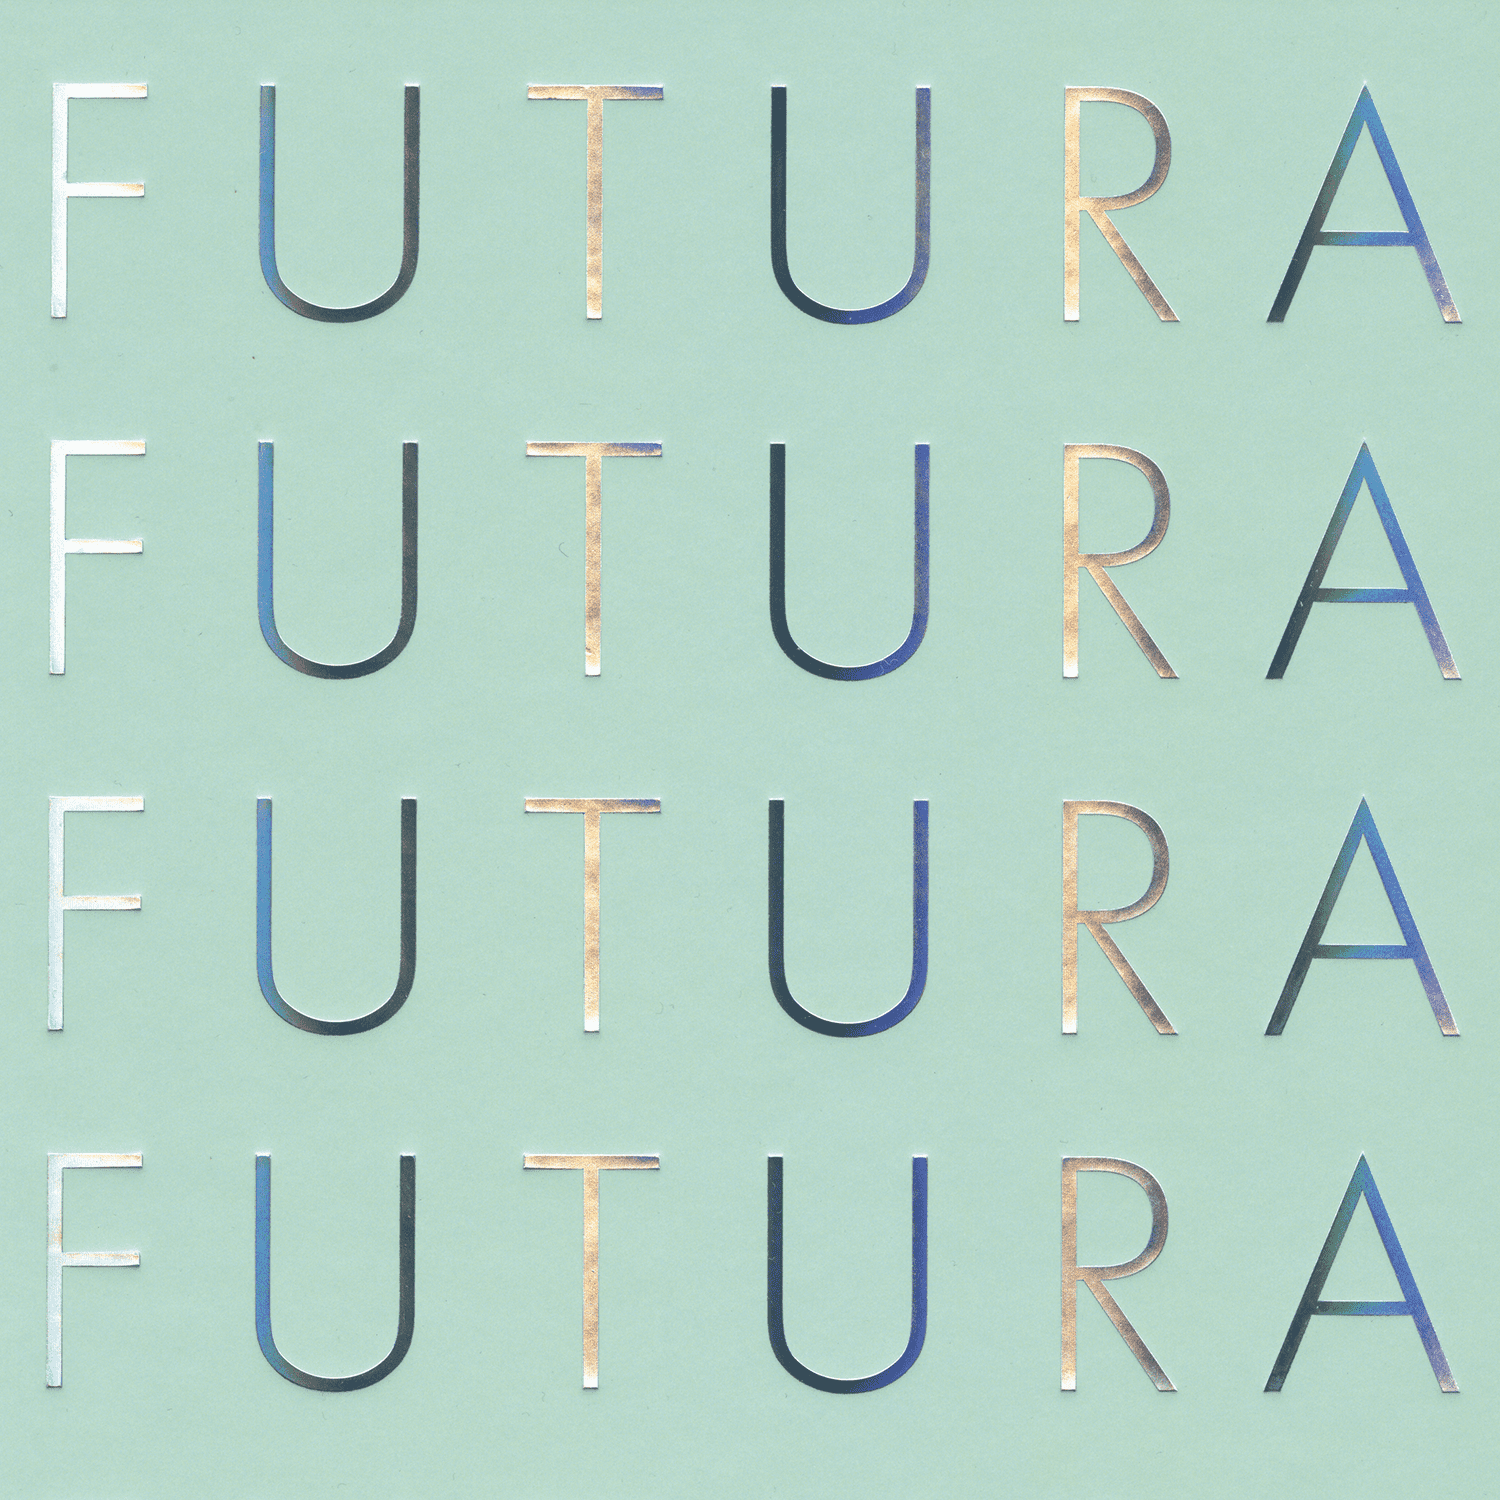 Image de Futura. La typographie